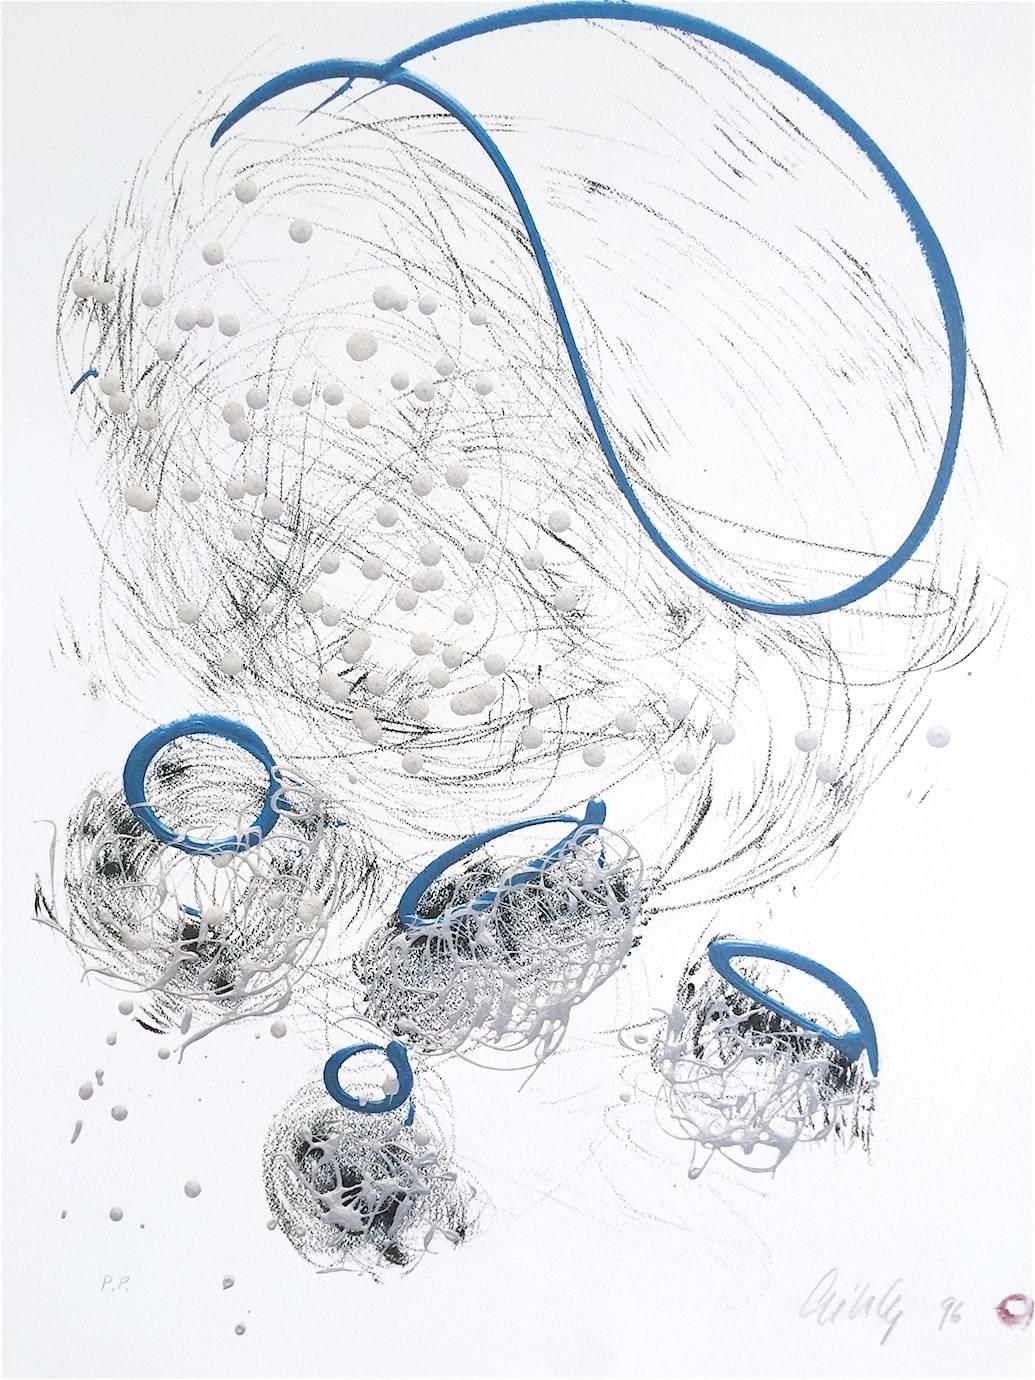 Lithographie de forme abstraite dessinée en graphite, bleu perle, signée  - Print de Dale Chihuly